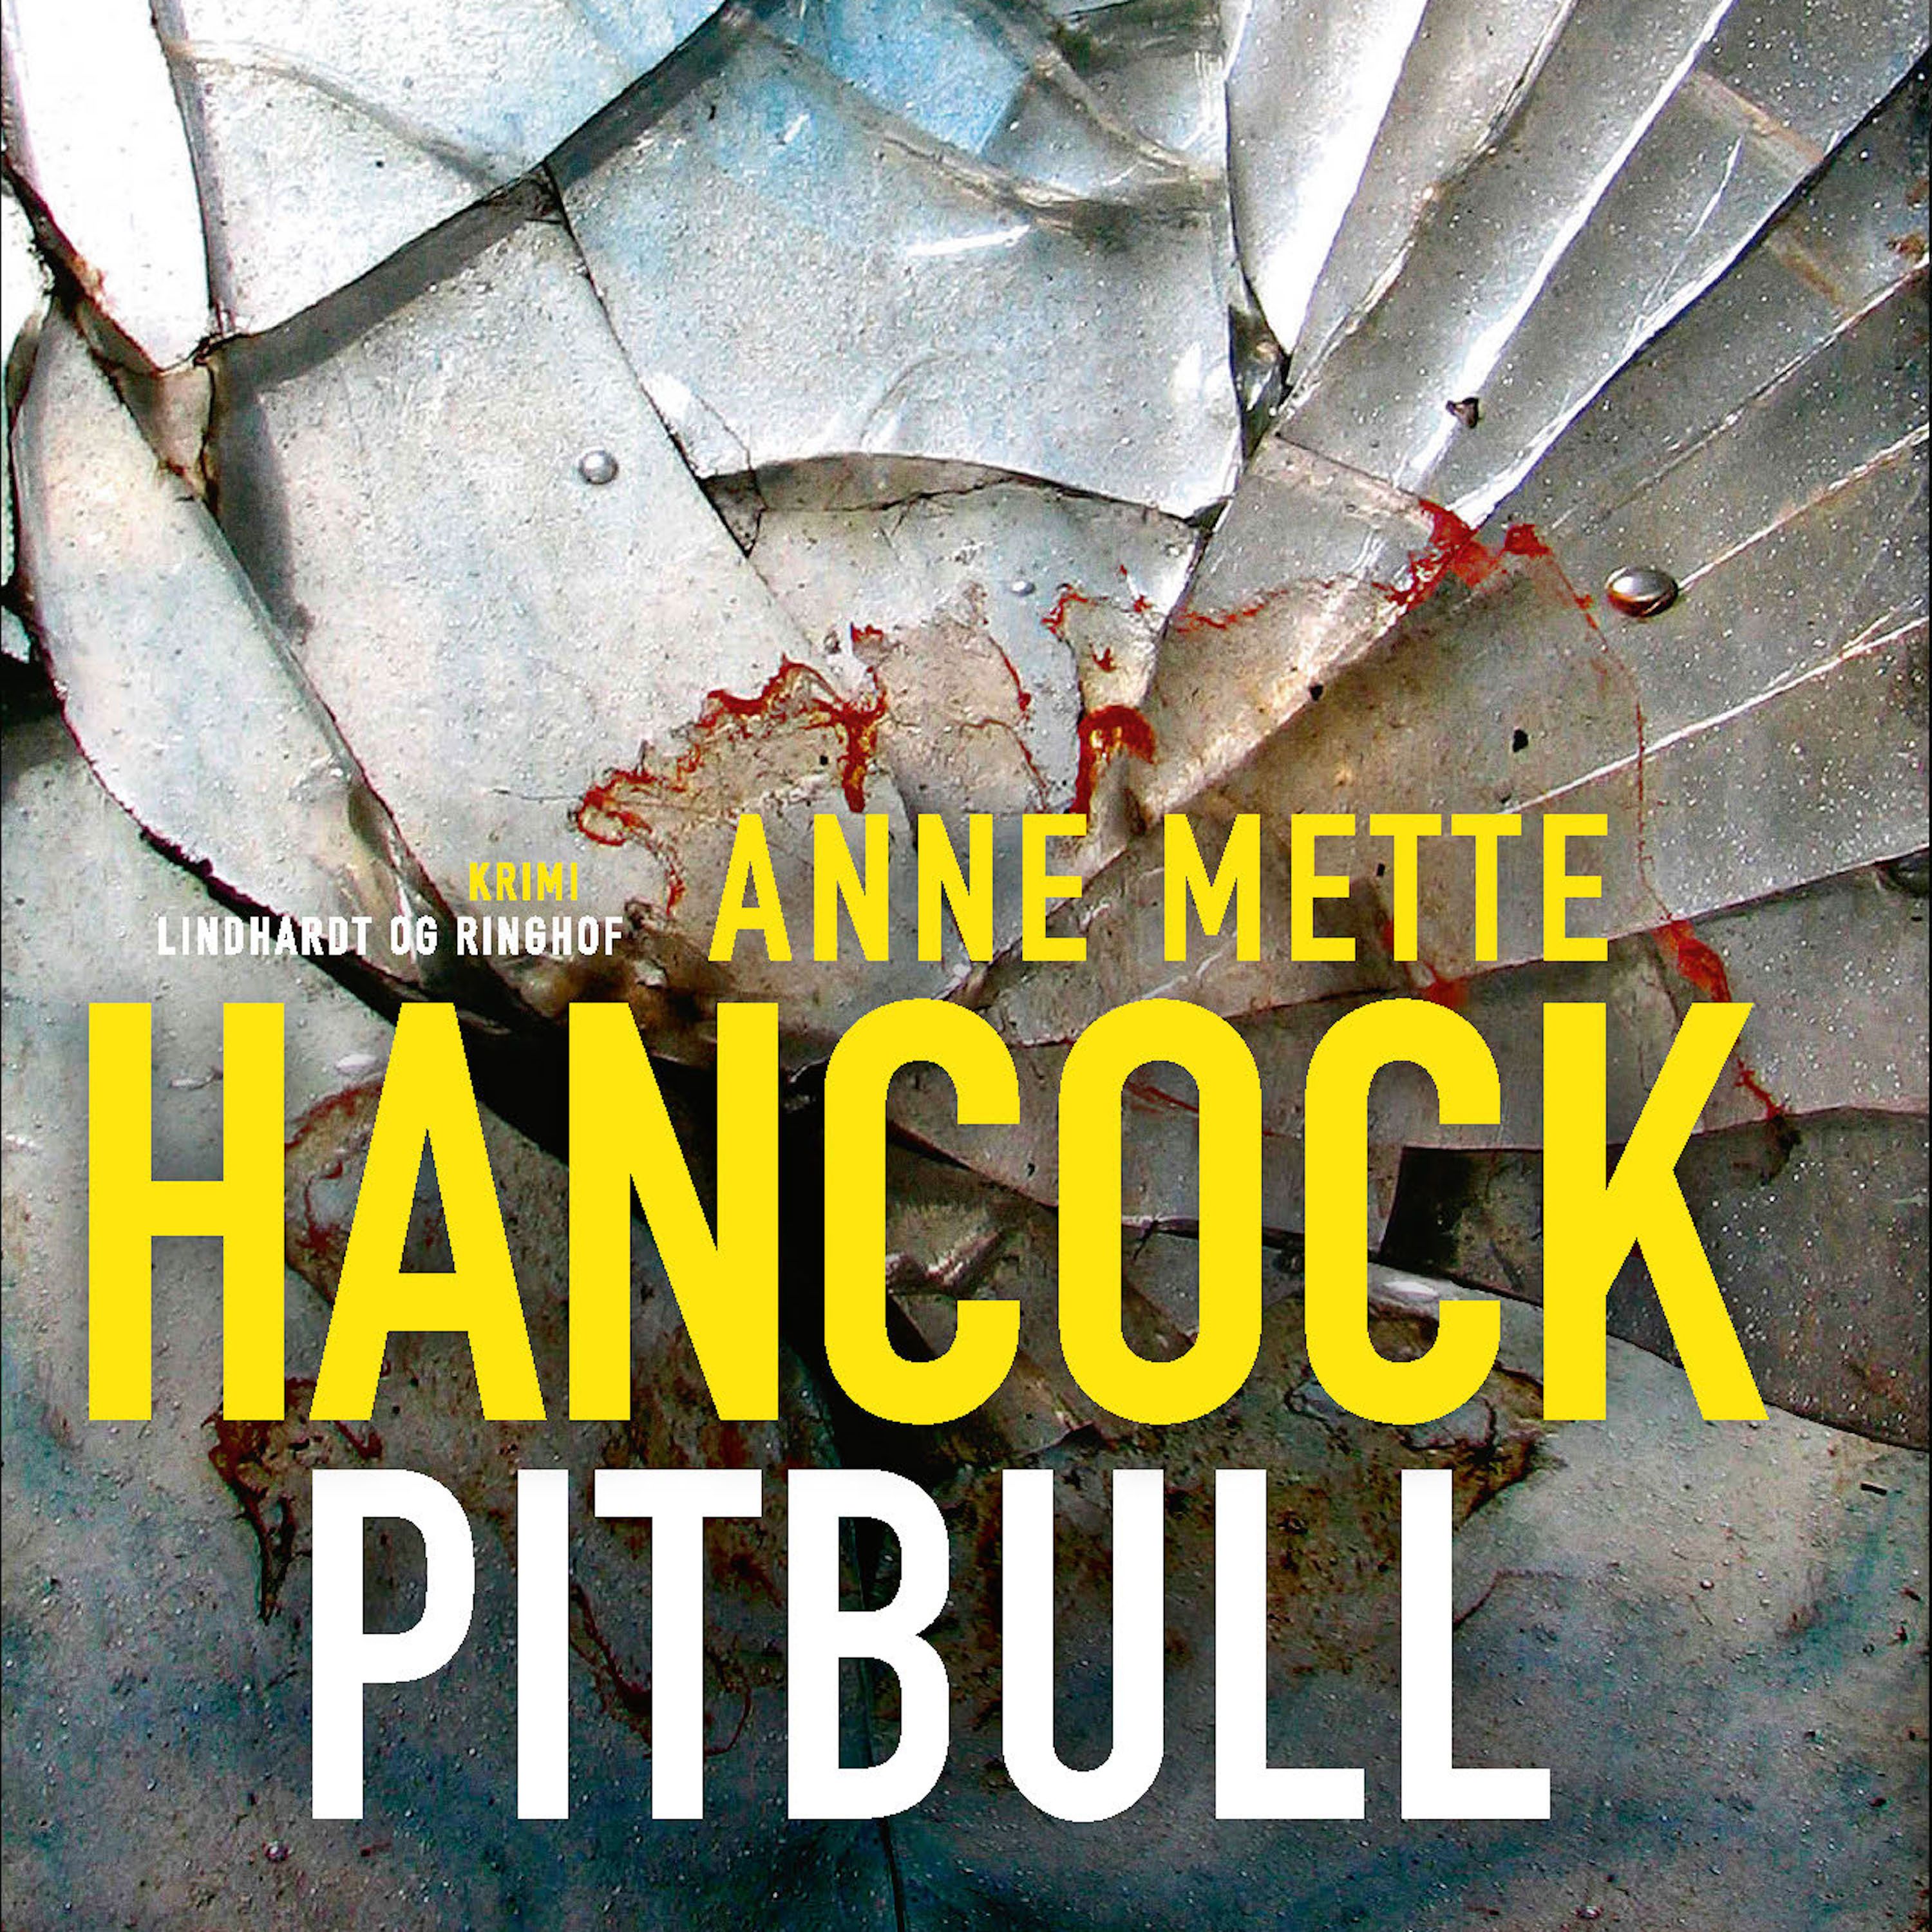 Pitbull, lydbog af Anne Mette Hancock